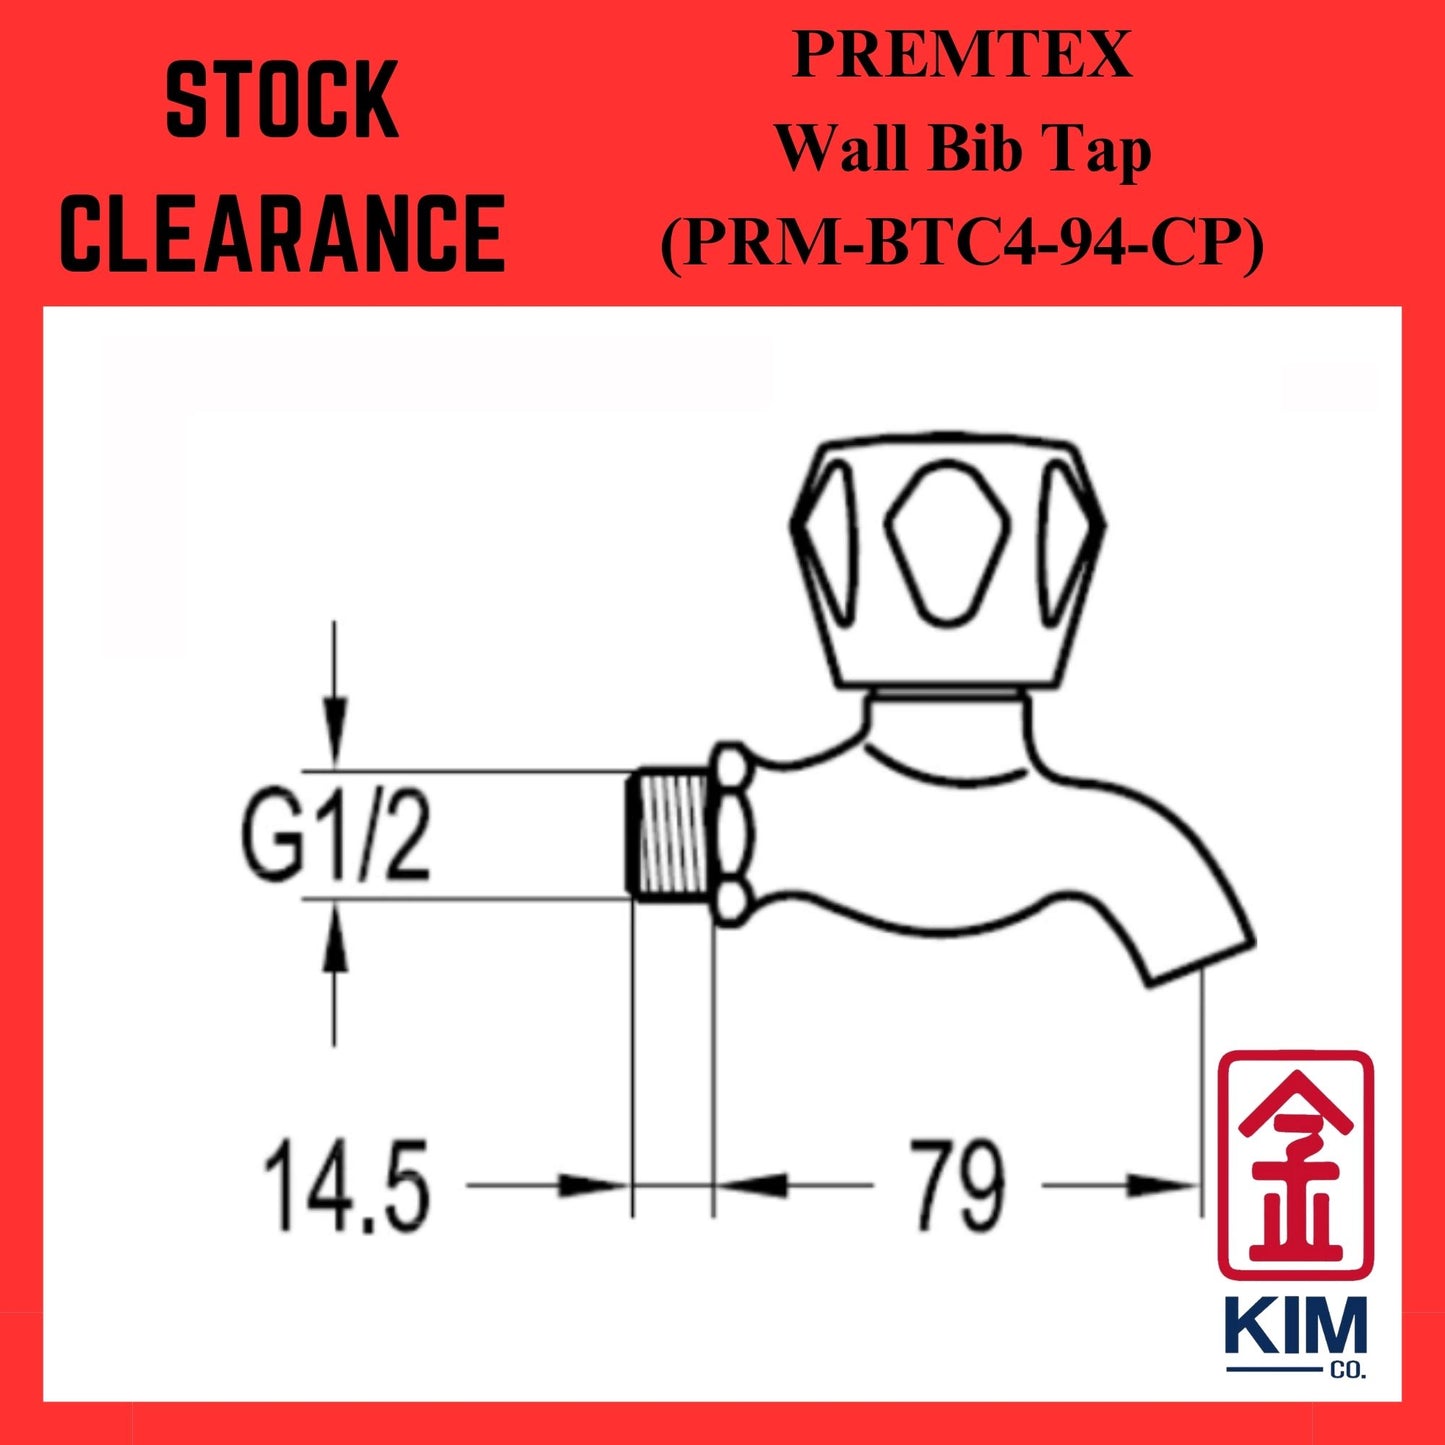 ( Stock Clearance ) Premtex Wall Bib Tap (PRM-BTC4-94-CP)